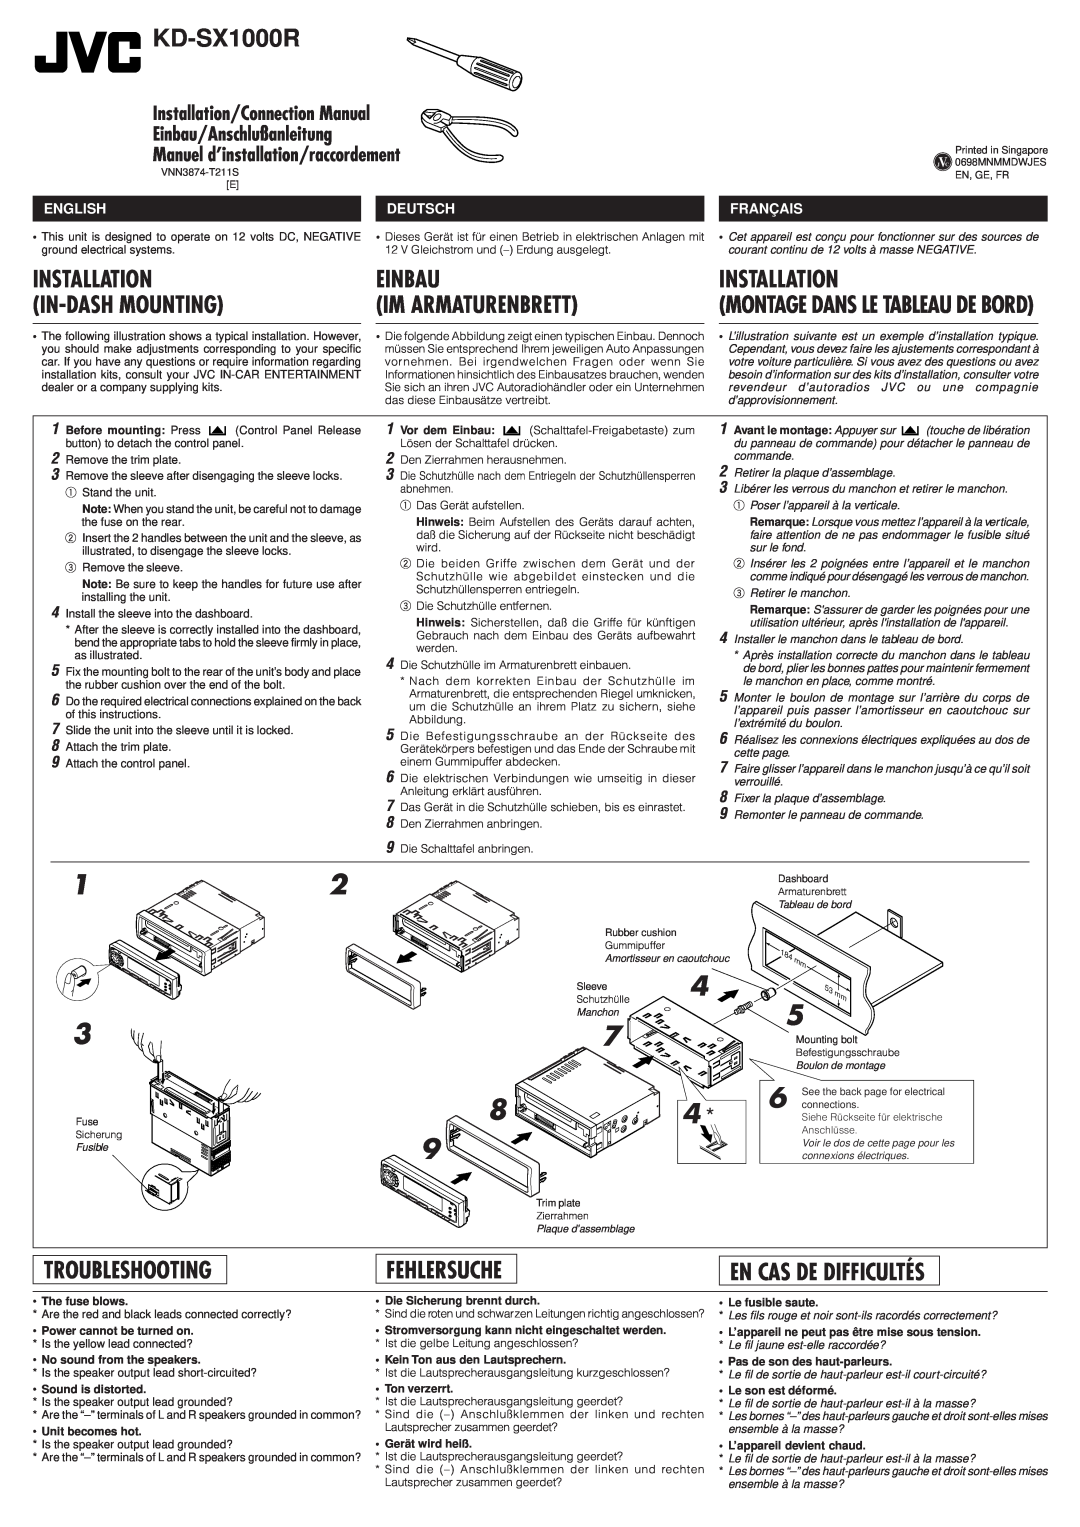 JVC KD-SX1000R manual Installation, Einbau, In-Dash Mounting, Troubleshooting, Fehlersuche, En Cas De Difficultés, English 